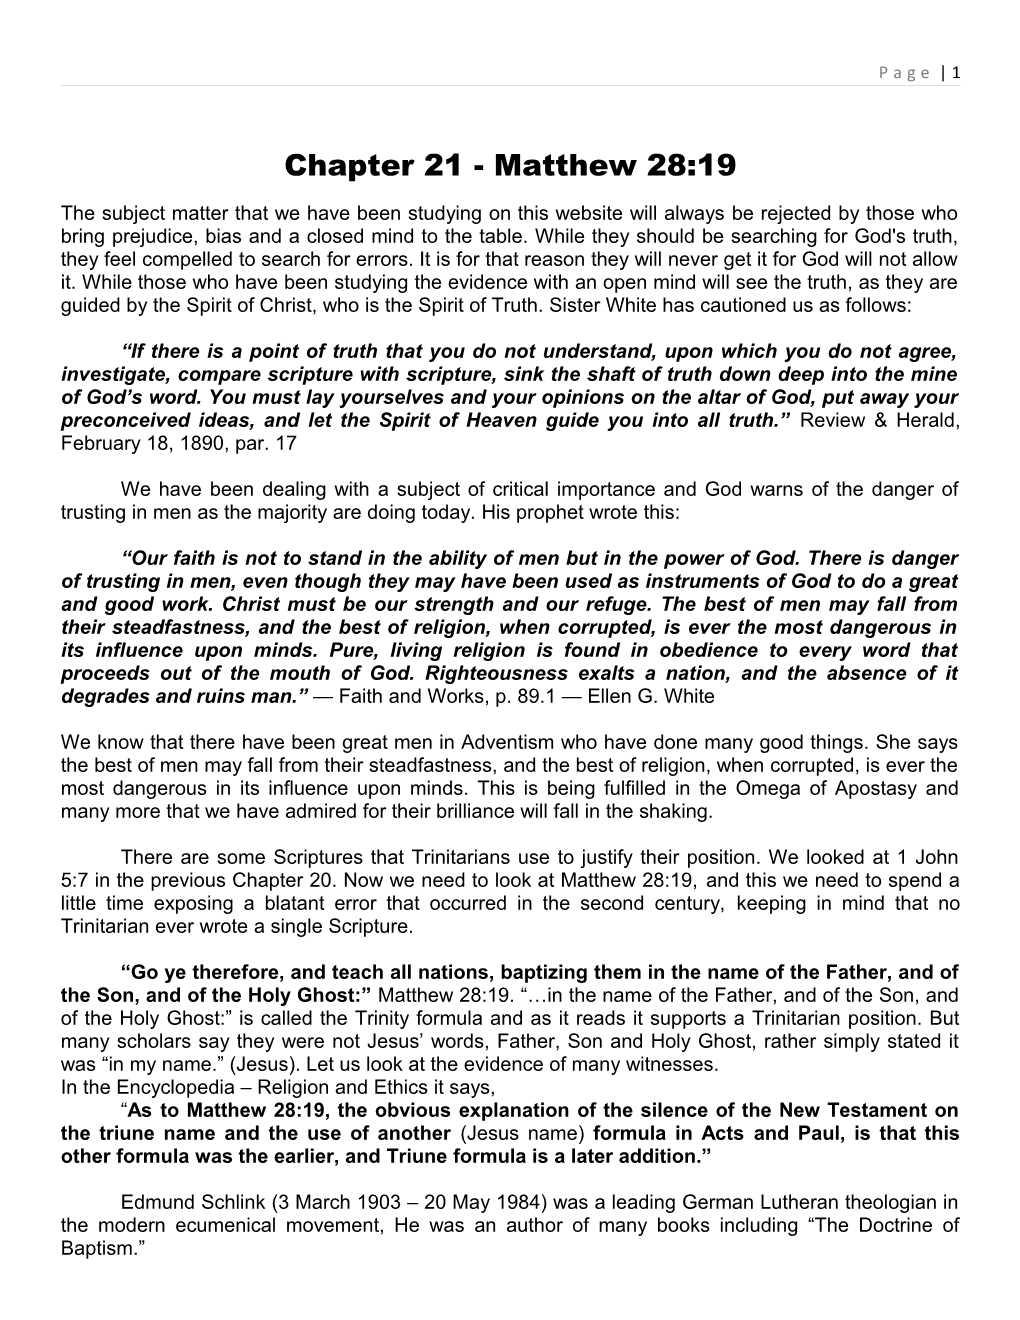 Chapter 21 - Matthew 28:19